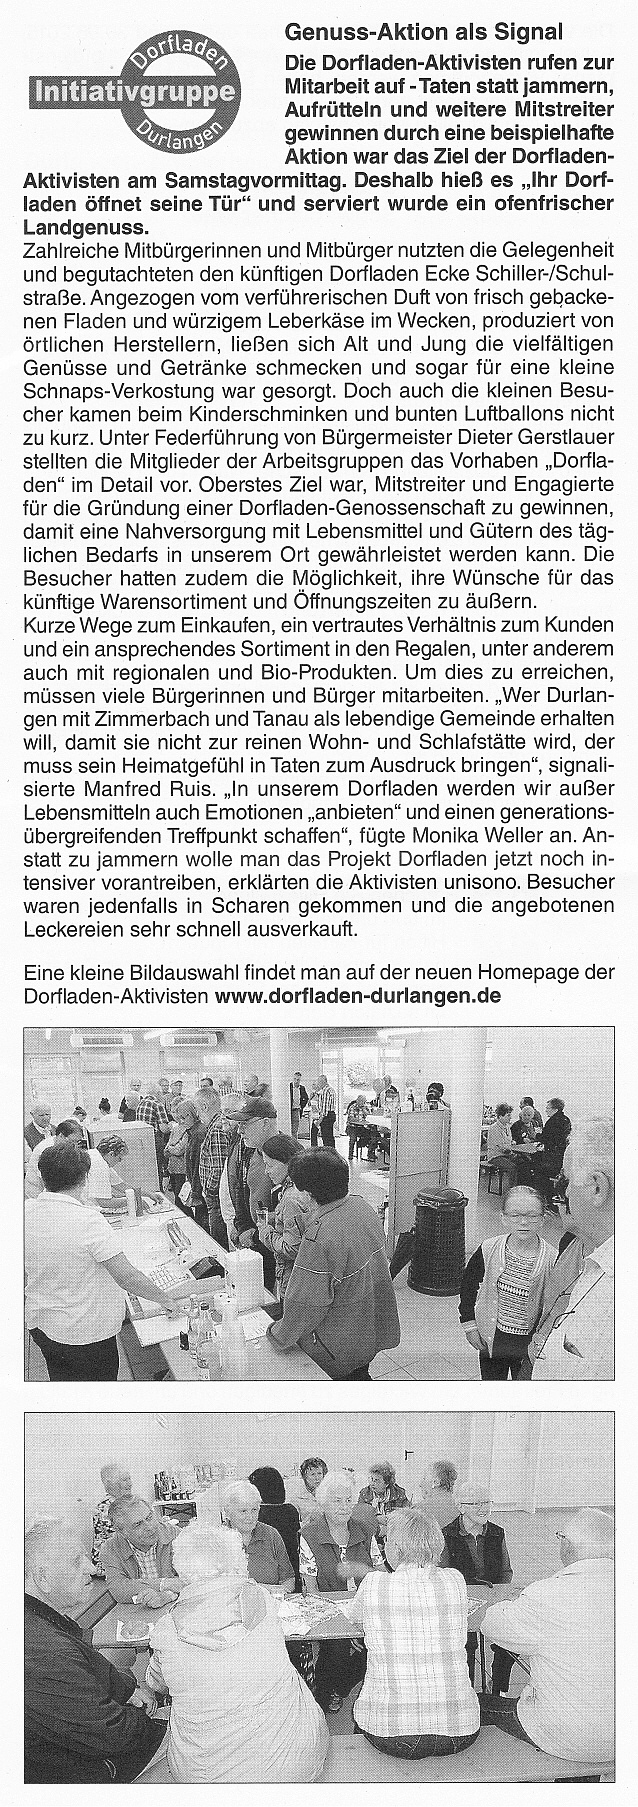 Amtsblatt vom 02.07.2015